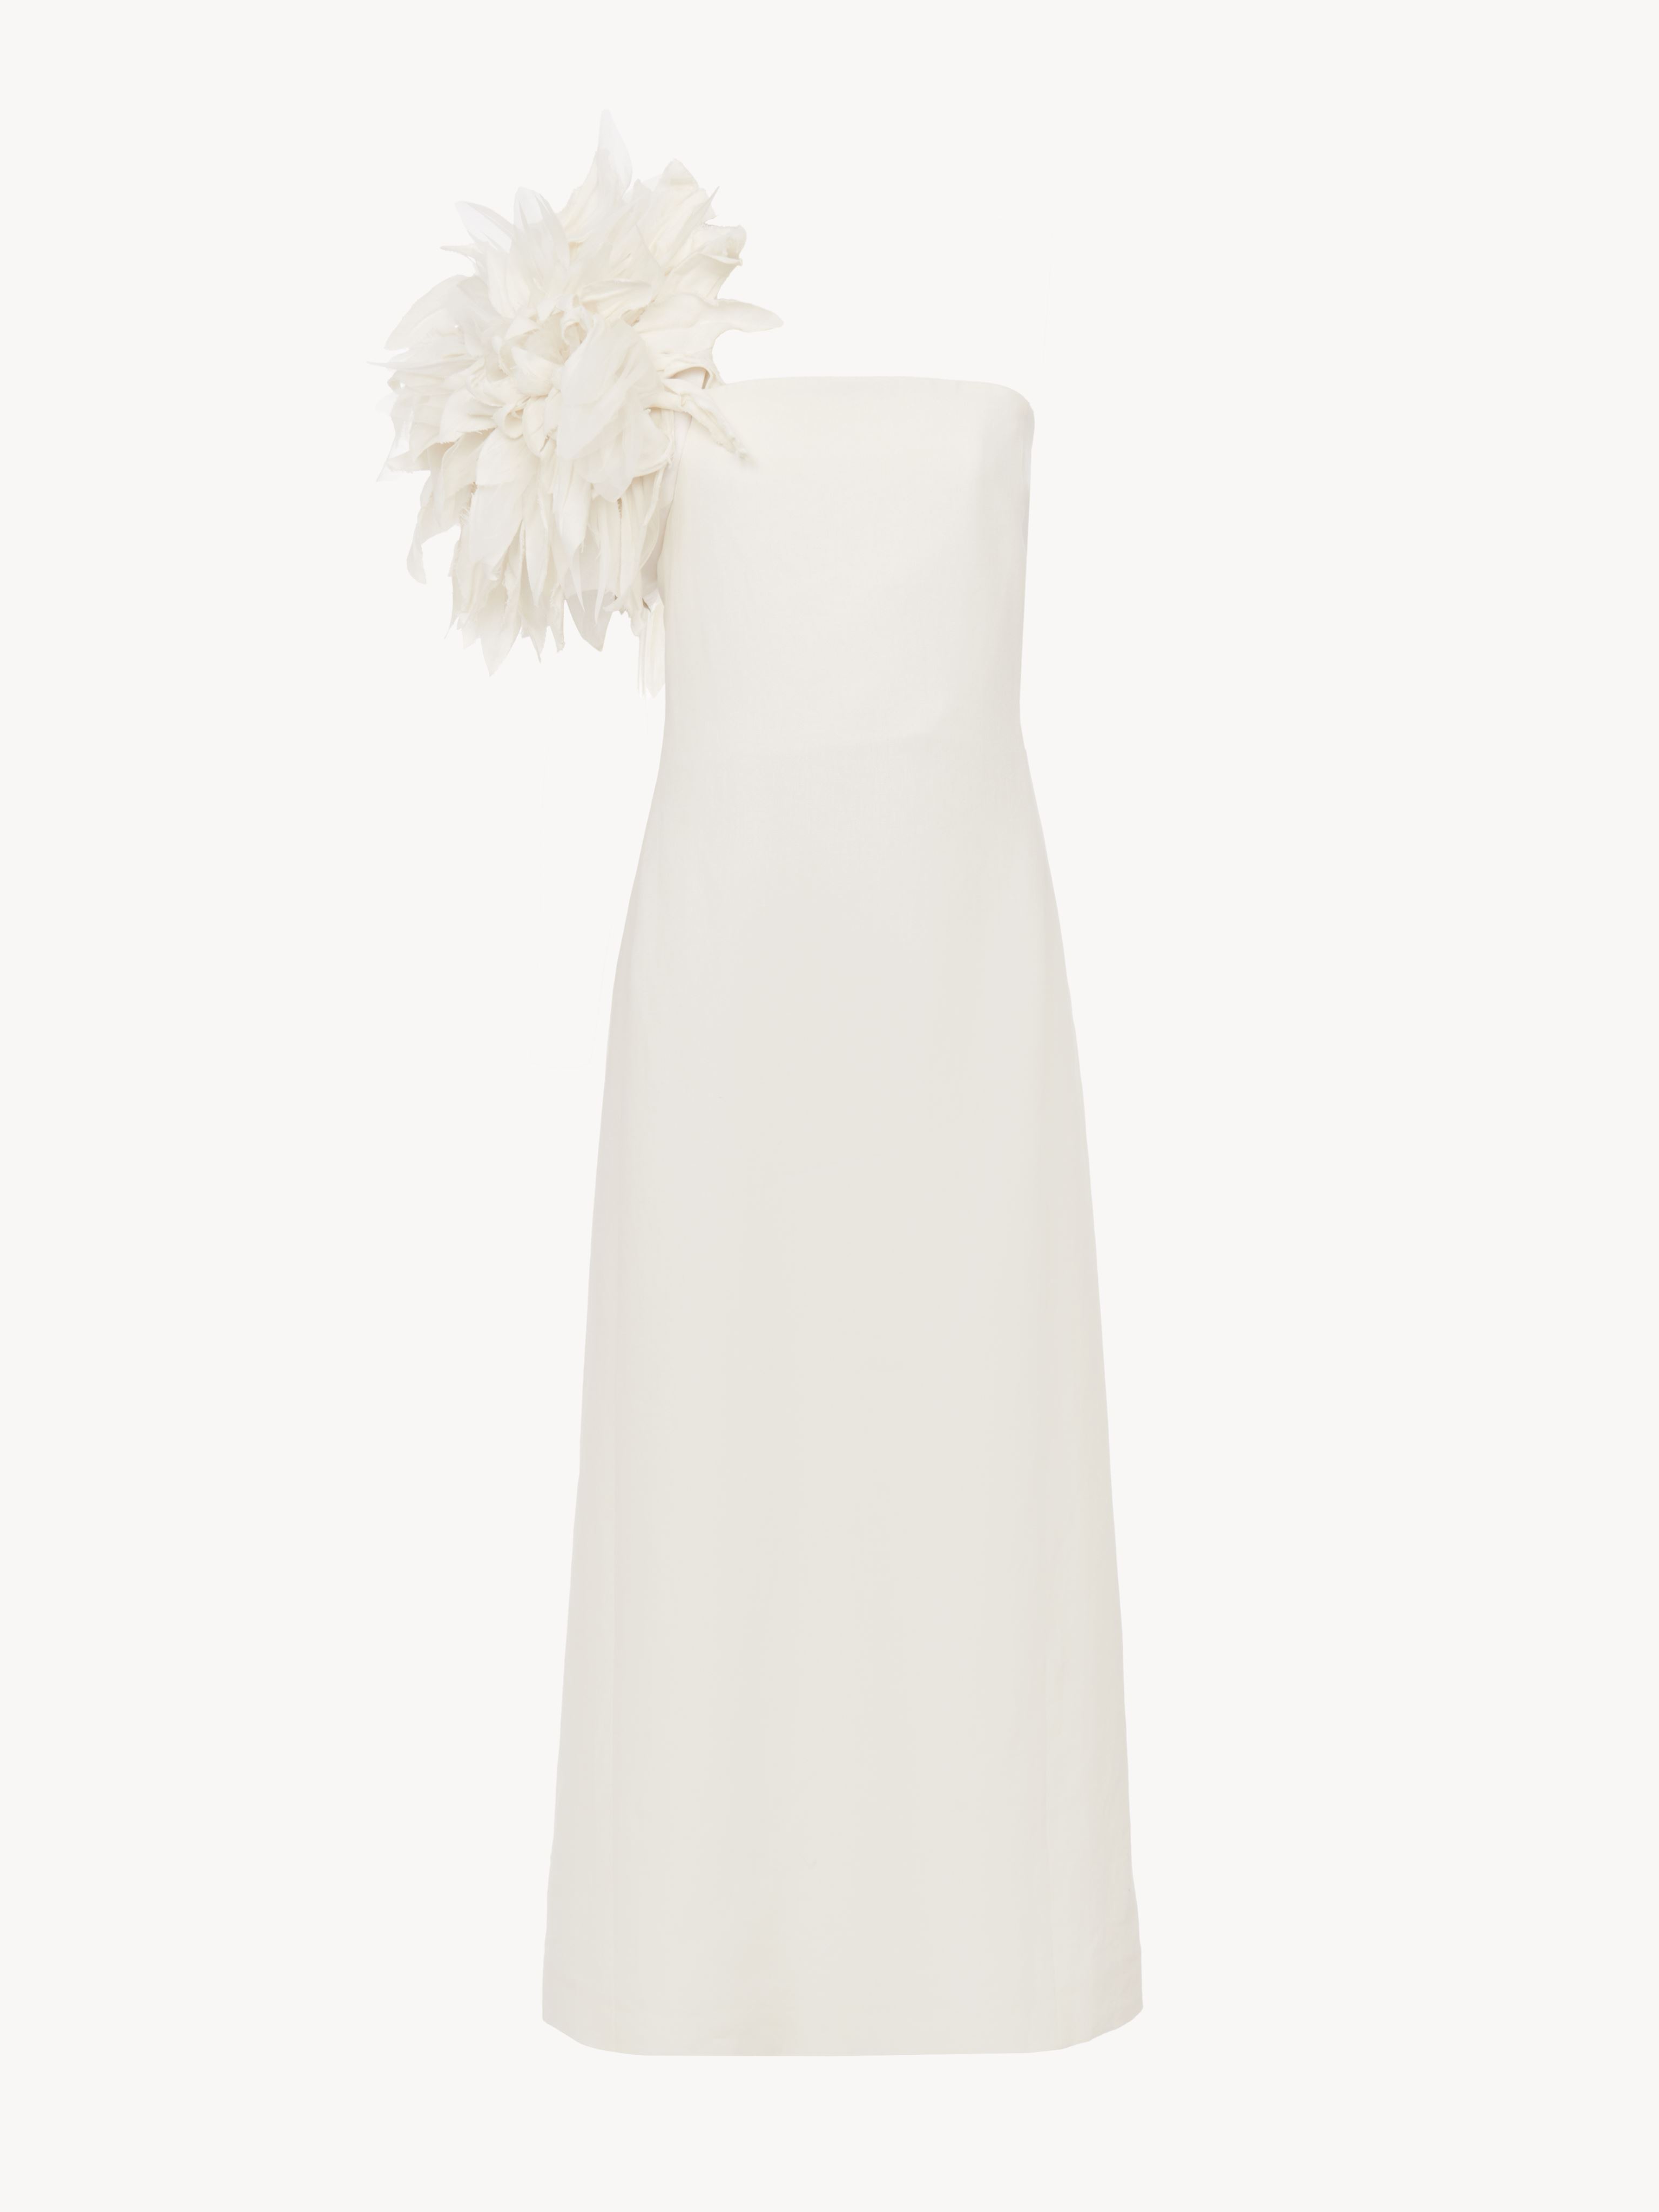 Chloé Bustier Midi Dress White Size 6 100% Linen, Silk